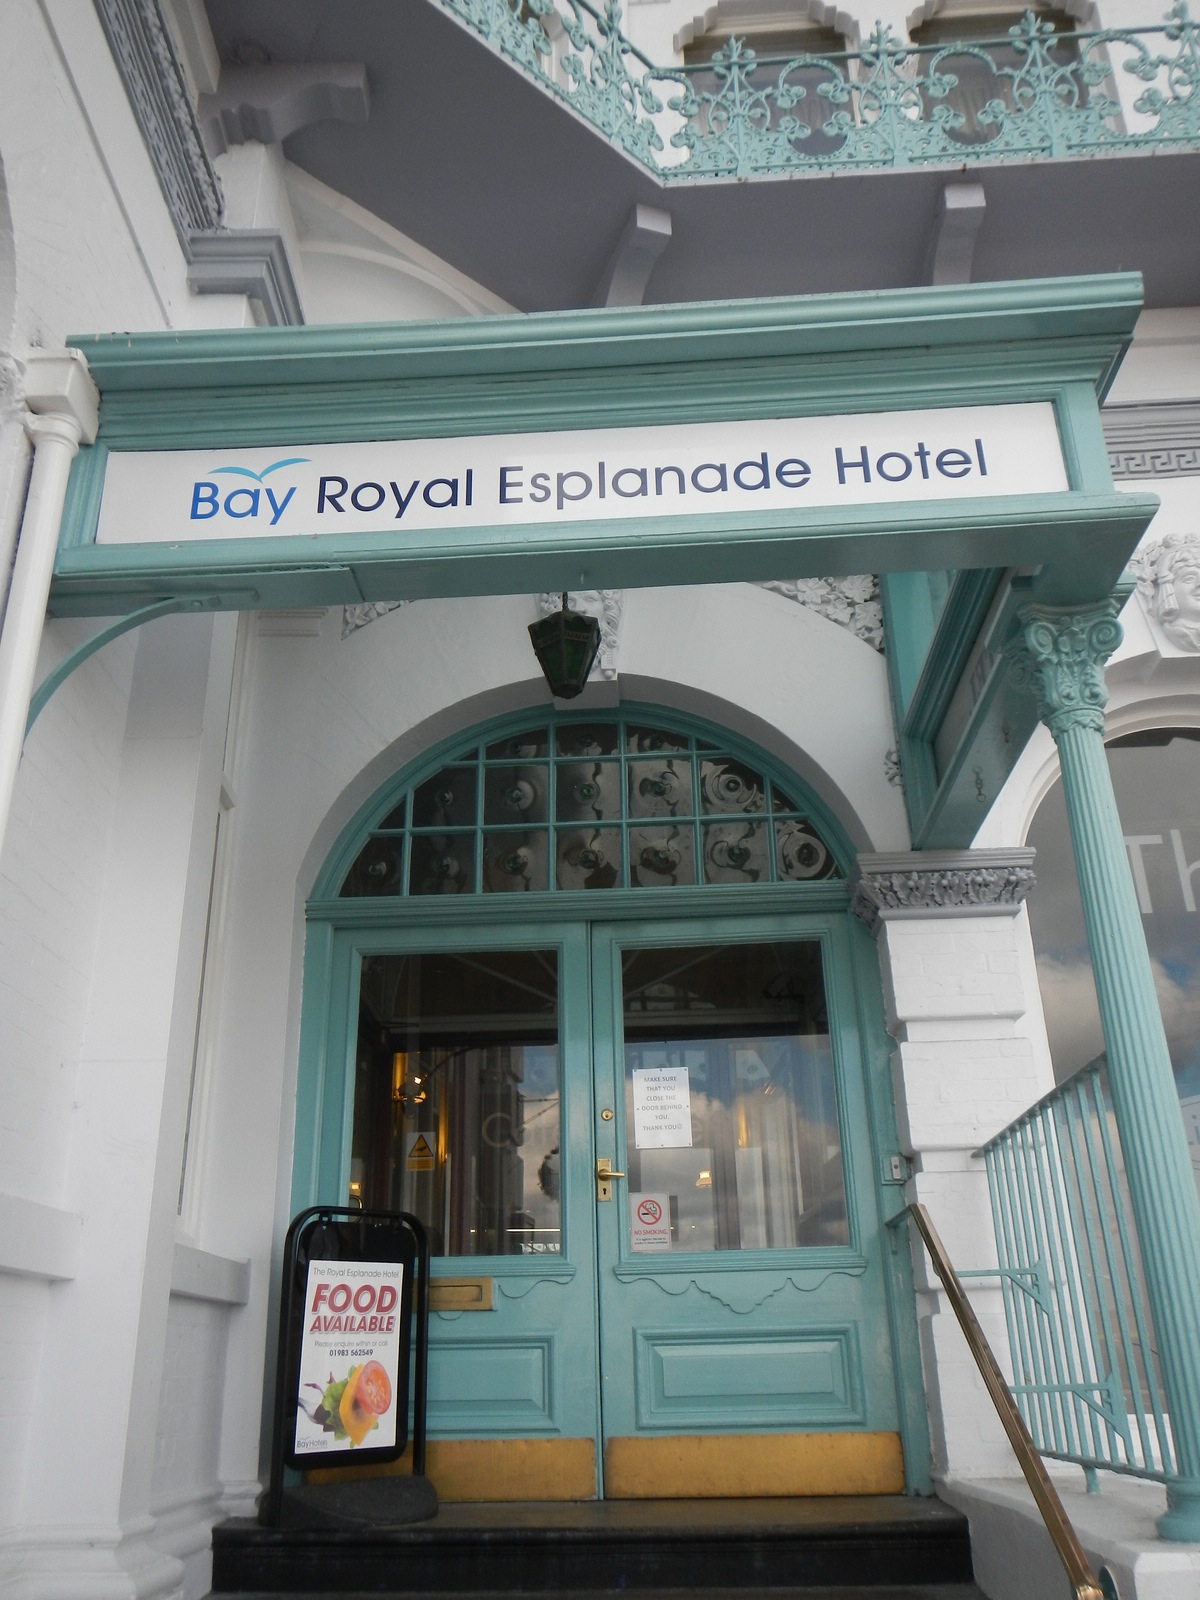  The Bay Royal Esplanade Hotel.​ 